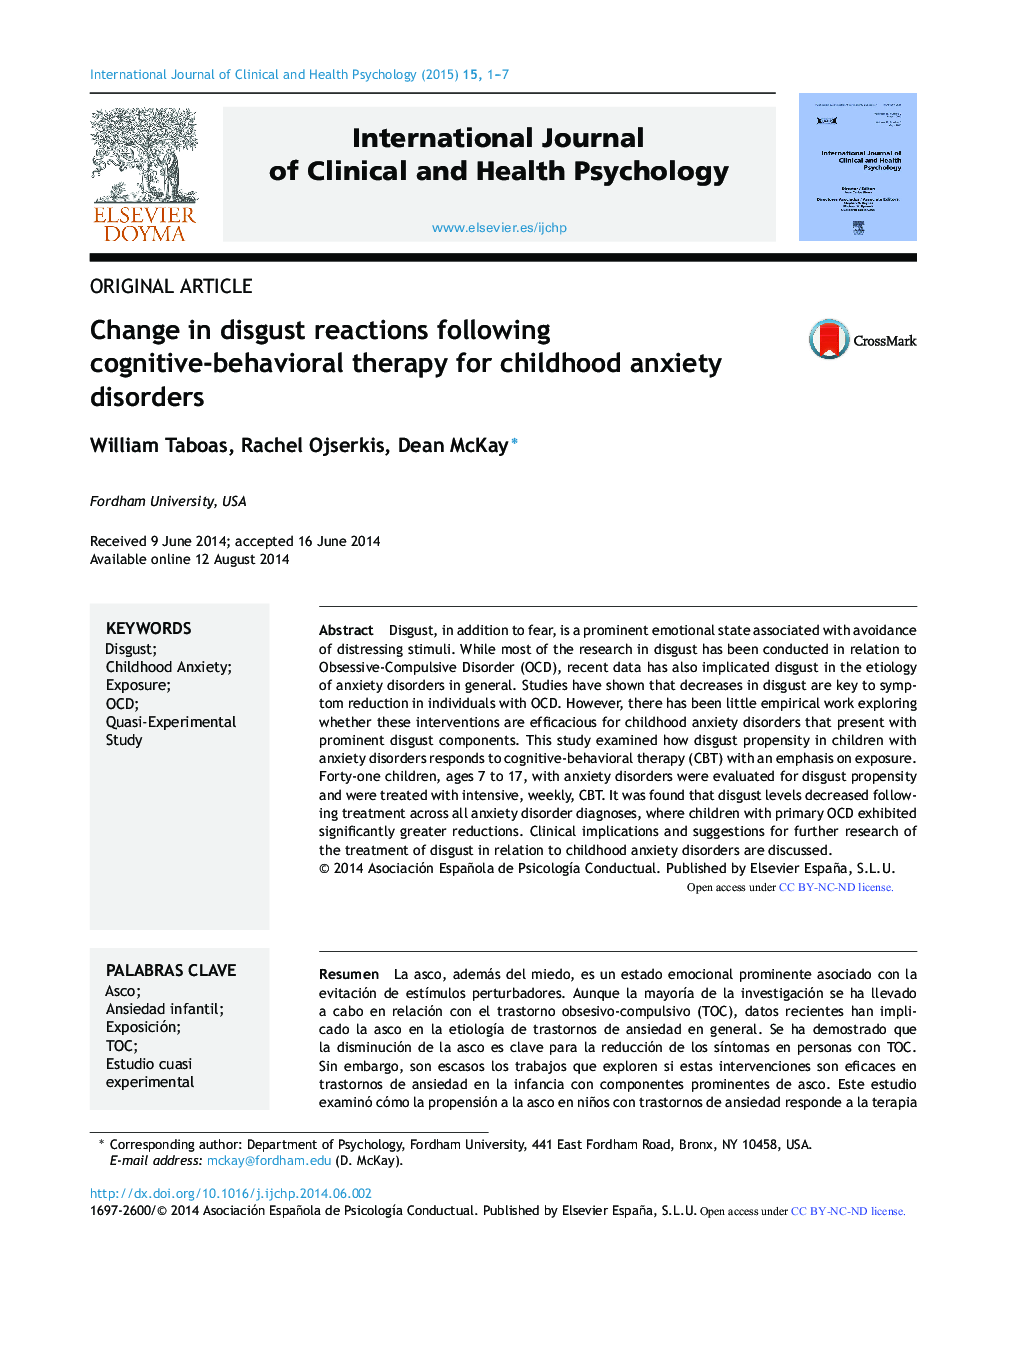 تغییر در واکنش‌های انزجاری بعد از درمان شناختی-رفتاری اختلالات اضطراب در کودکان